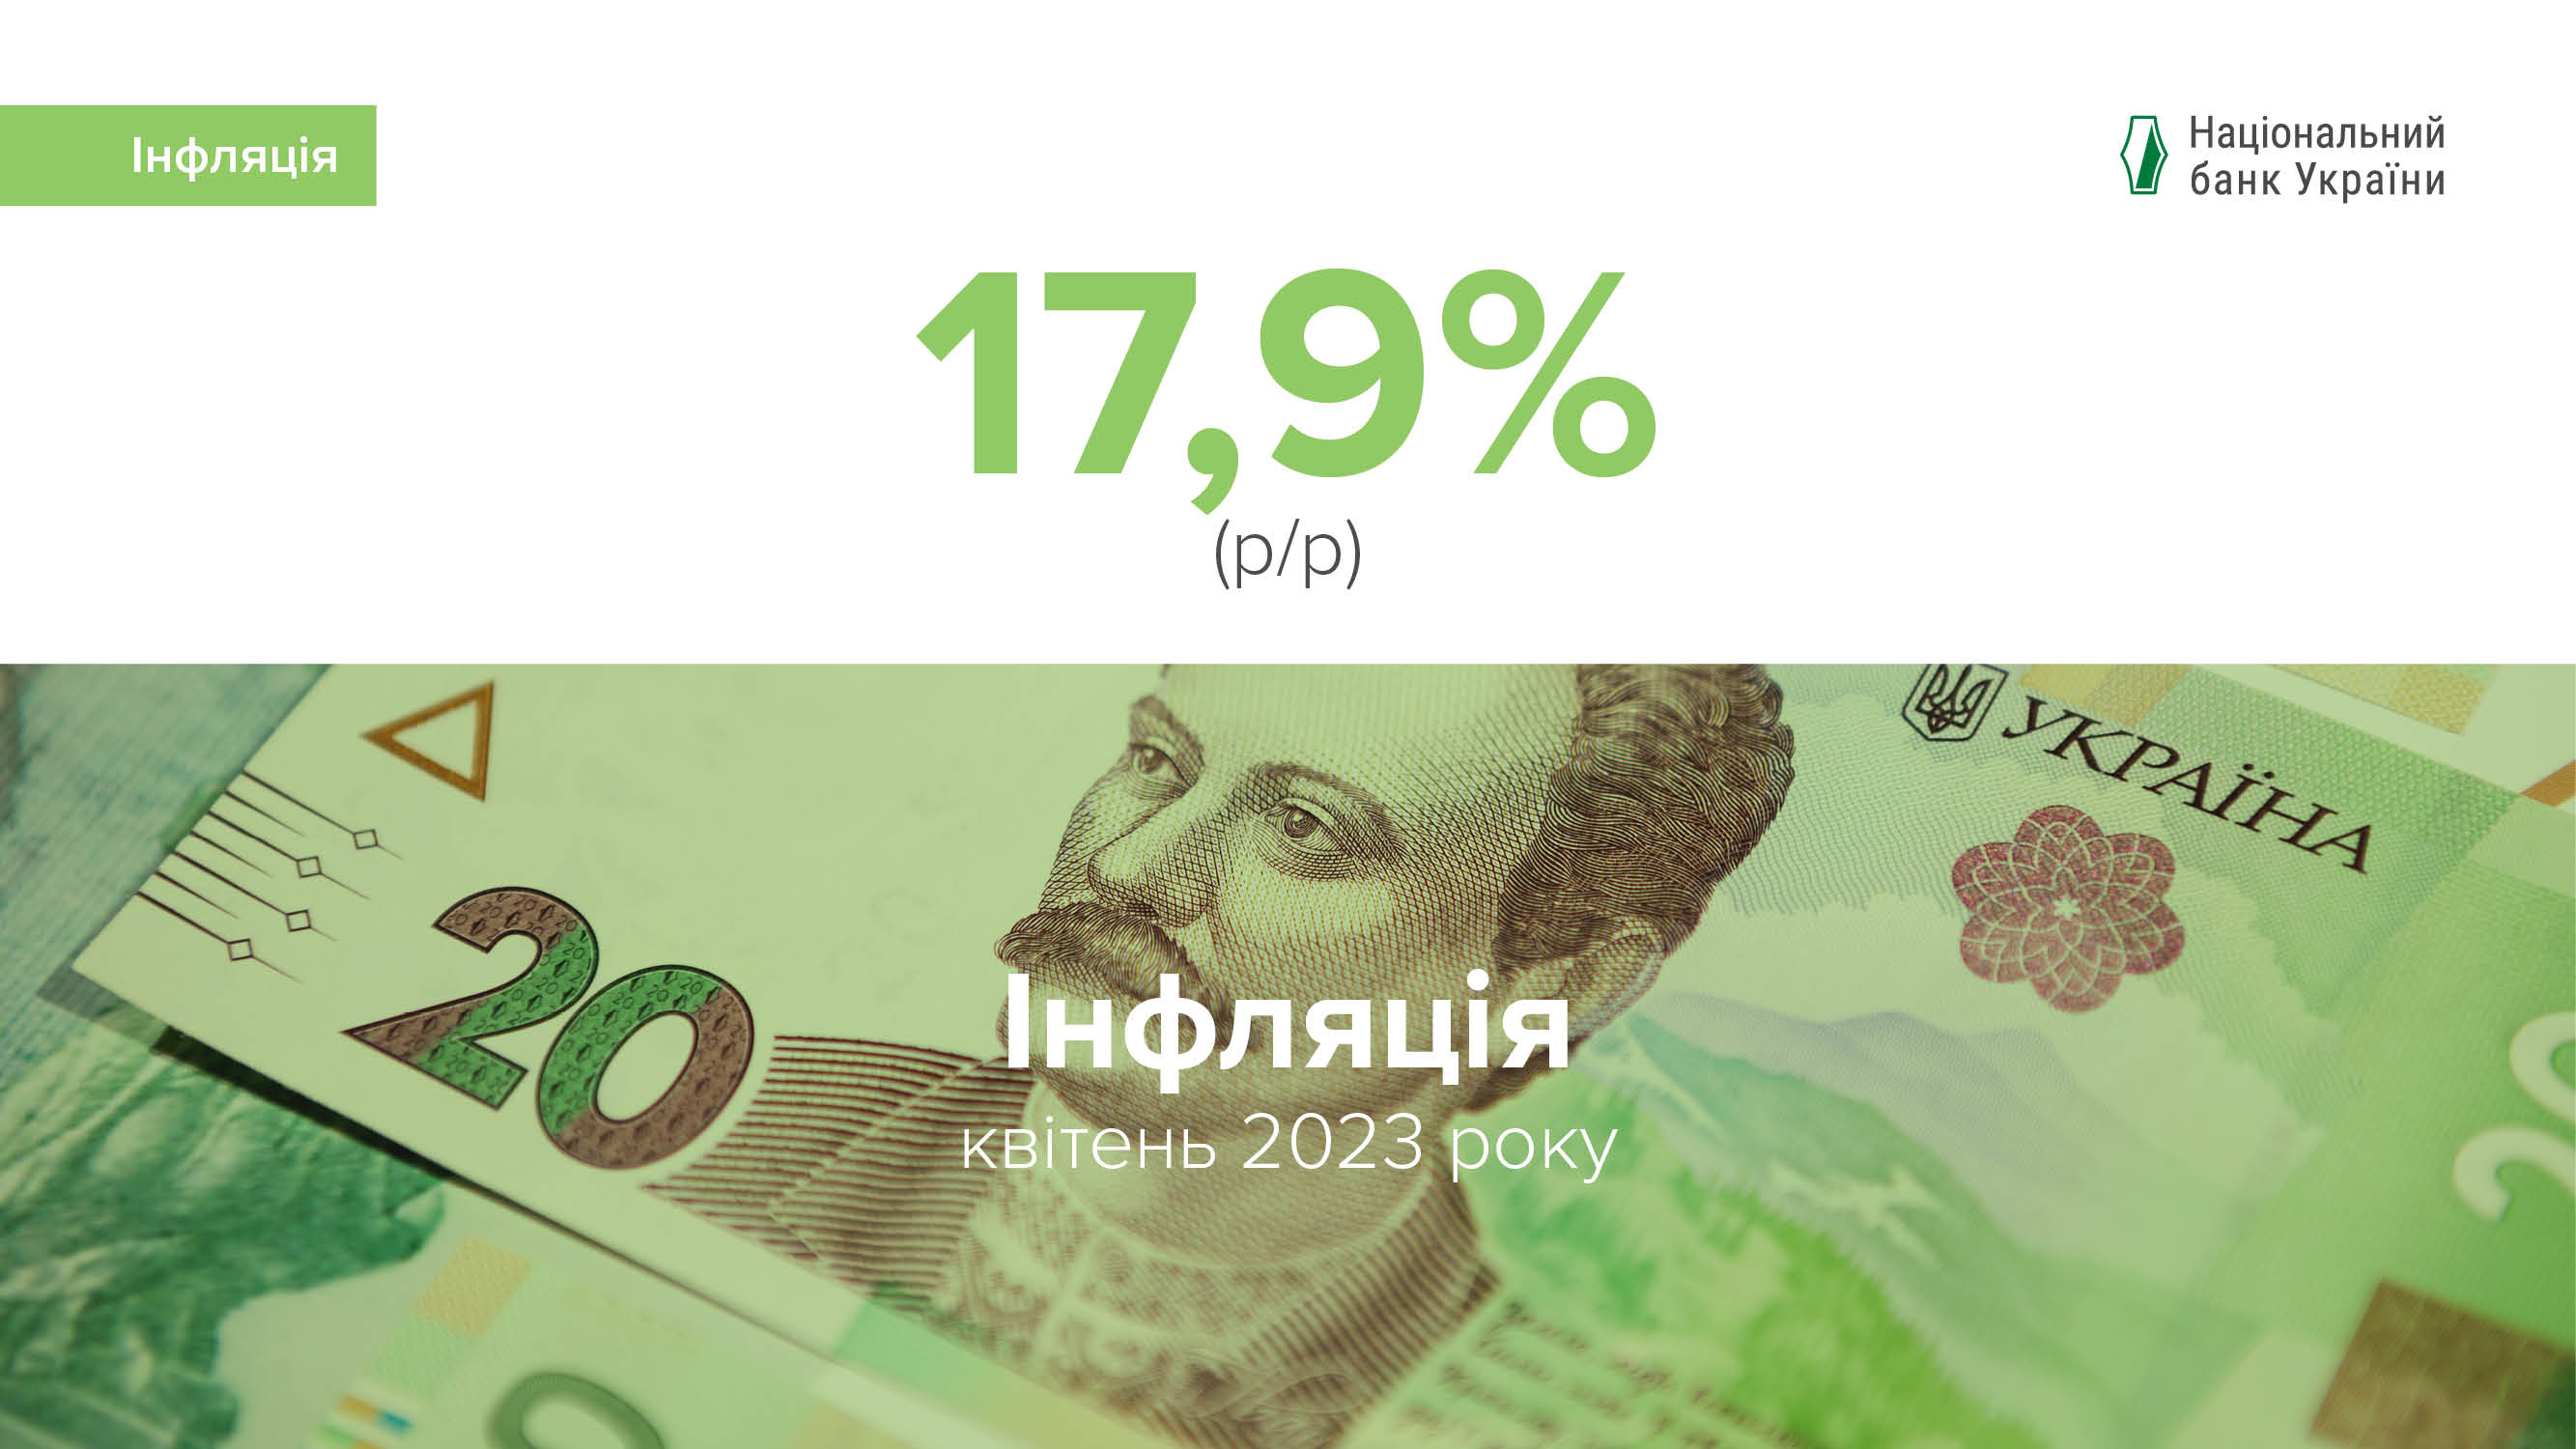 Коментар Національного банку щодо рівня інфляції в квітні 2023 року